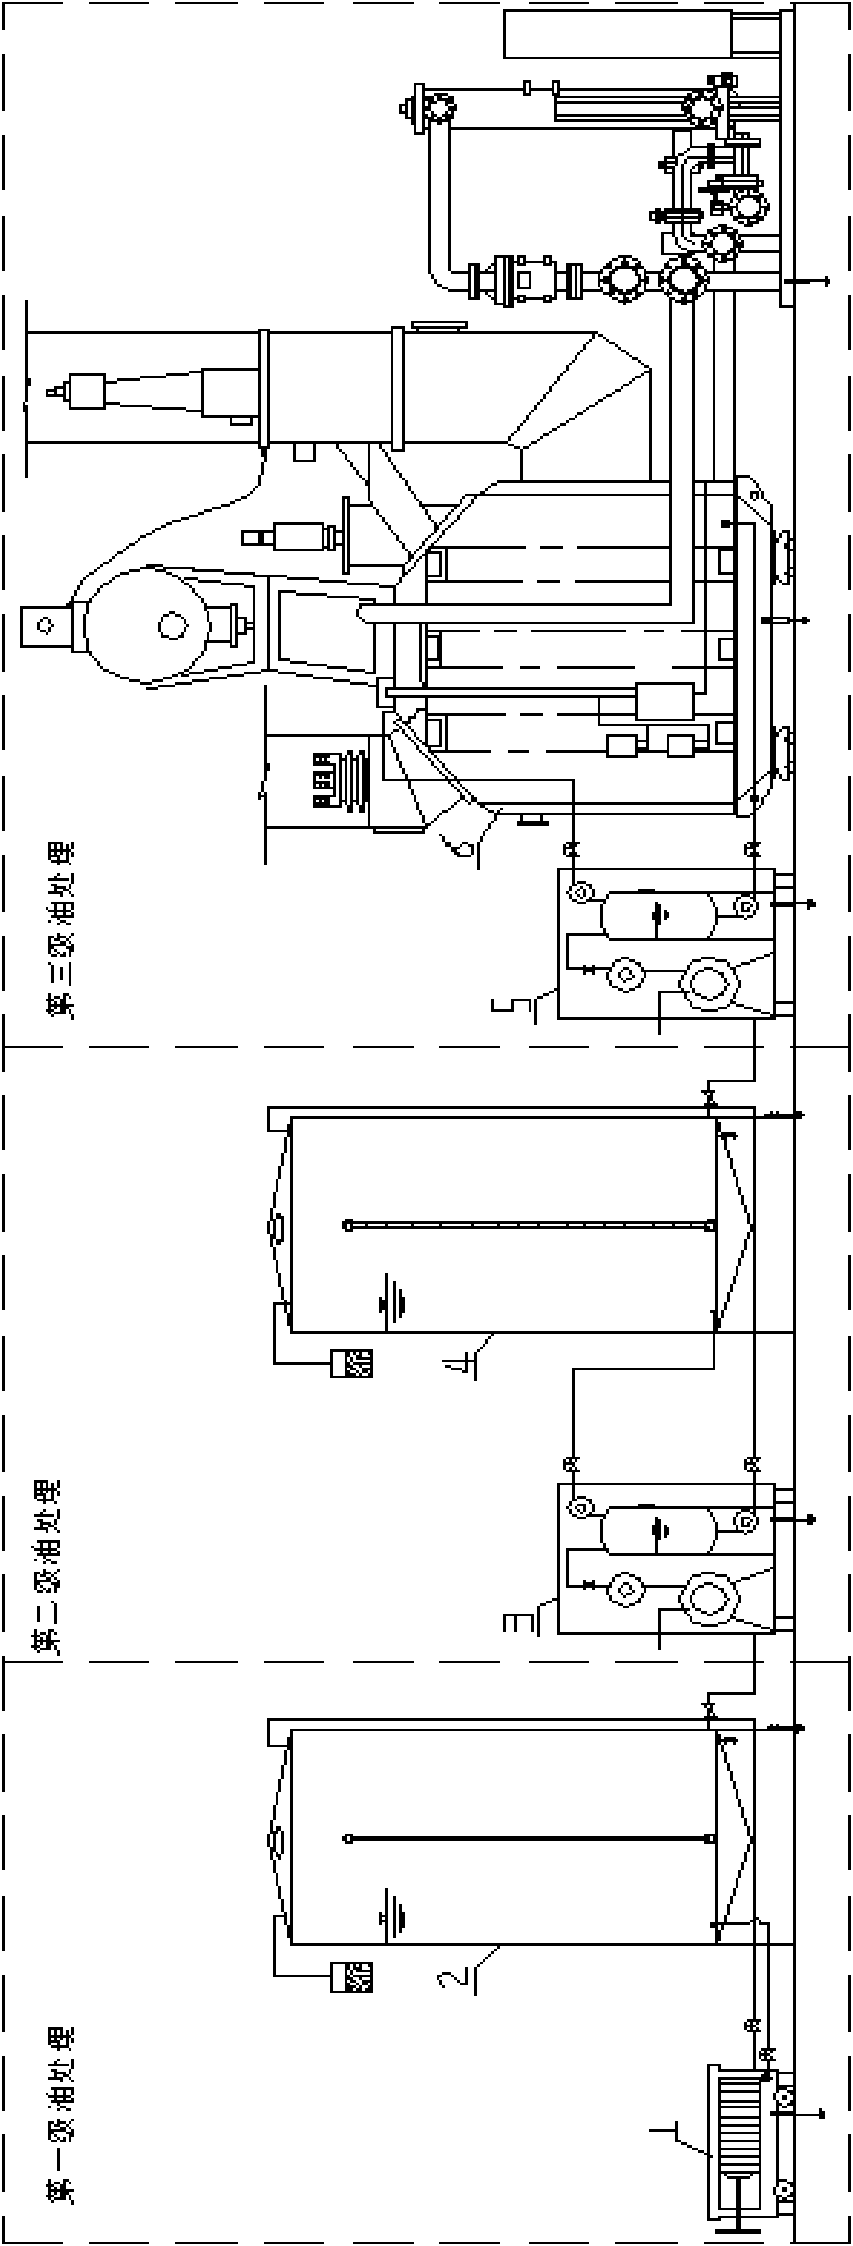 Method for treating insulating oil for transformer